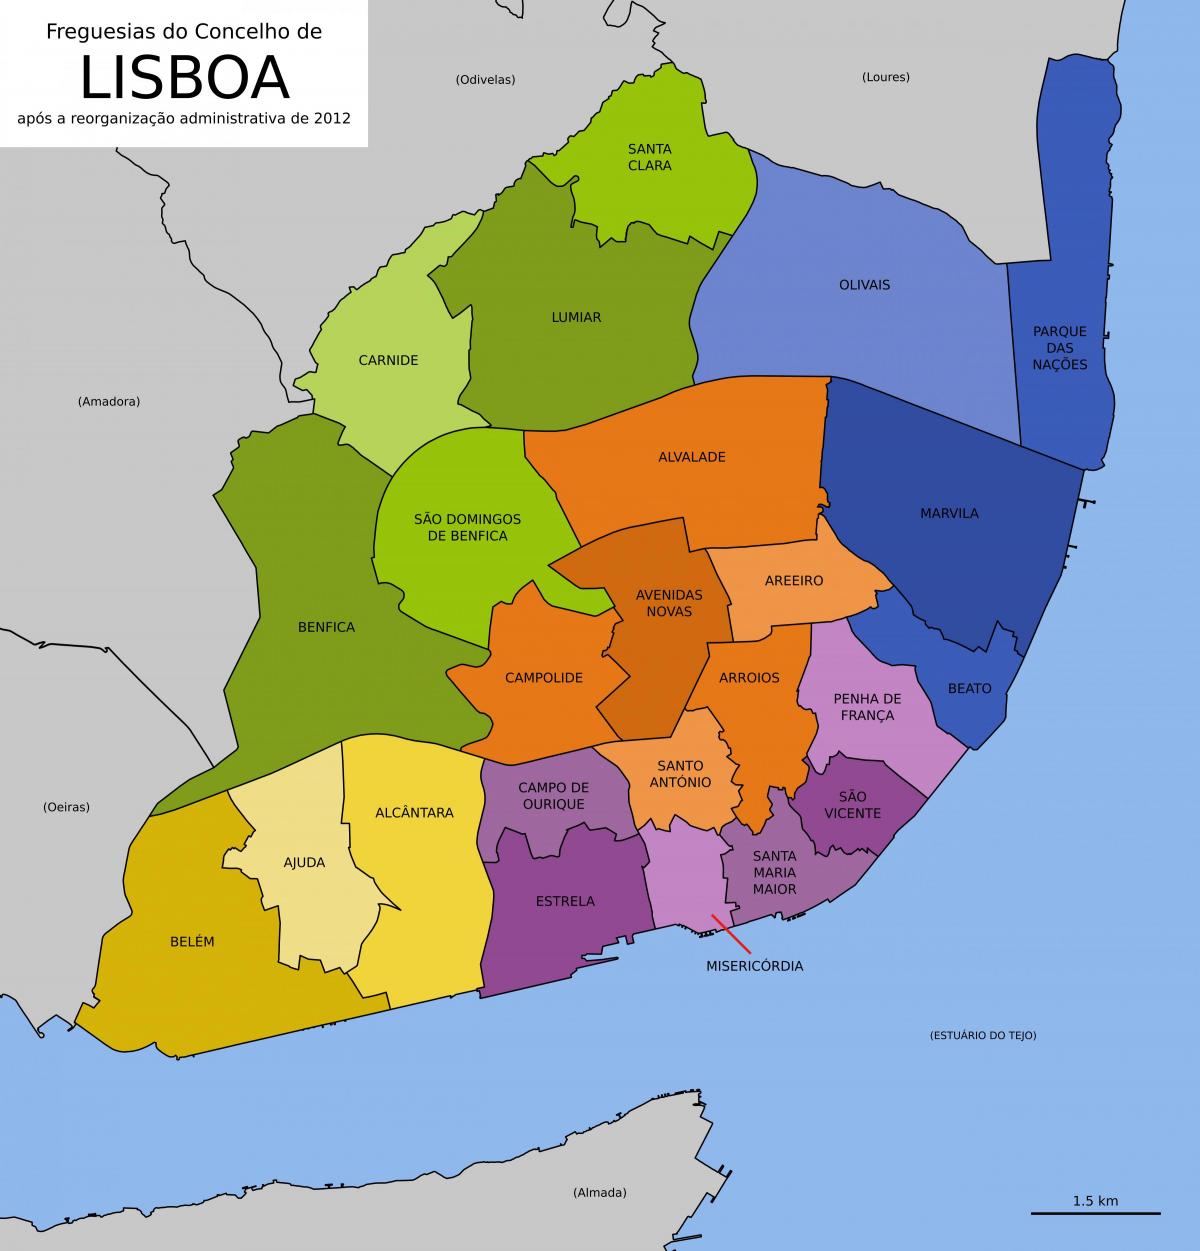 mapa de lisboa mostrando los distritos